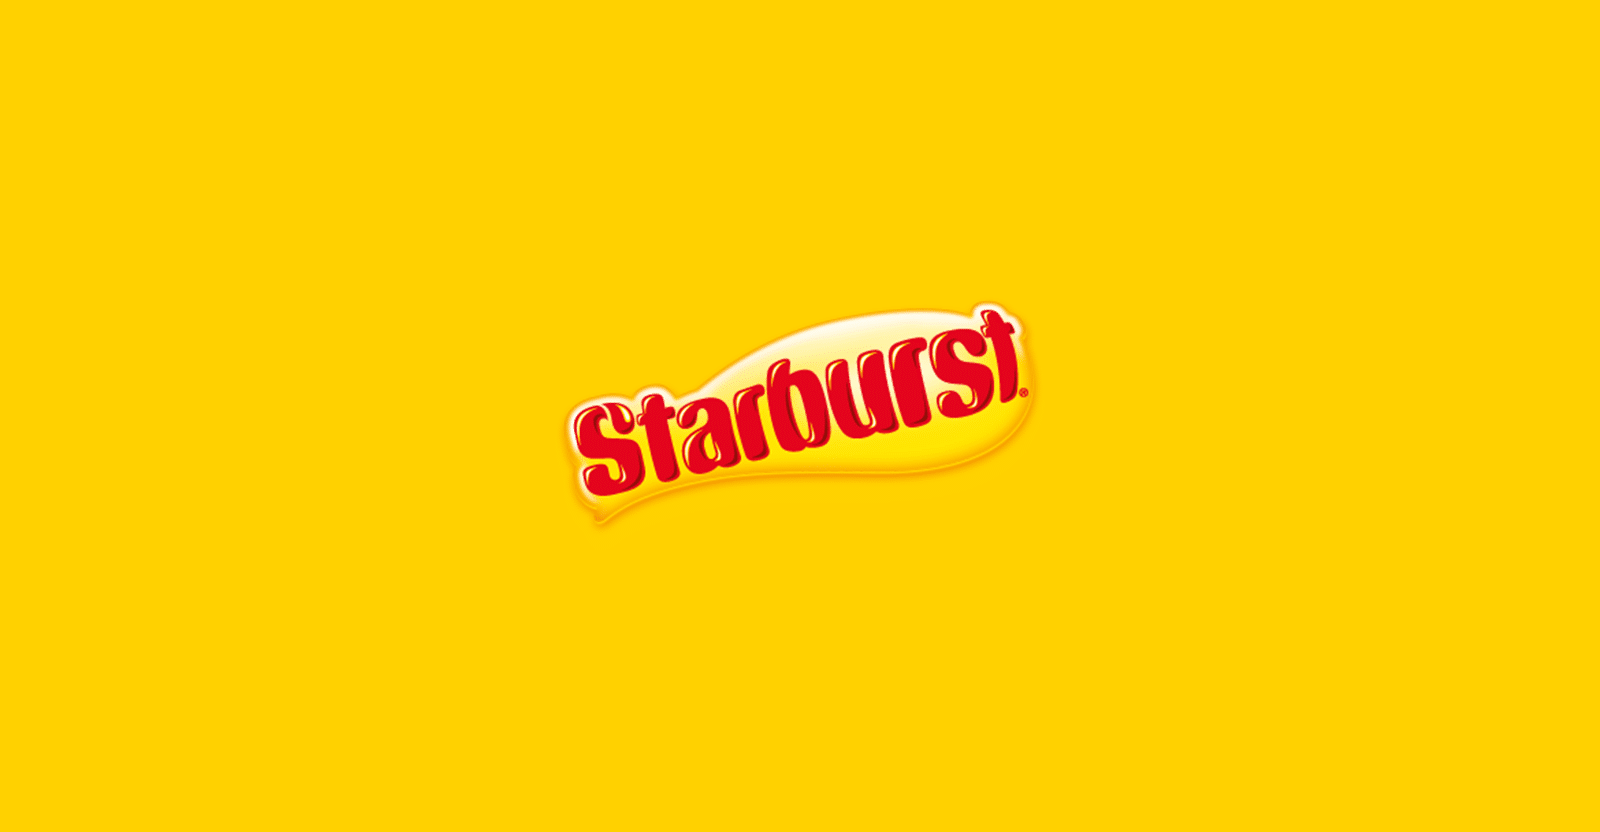 are starbursts gluten-free